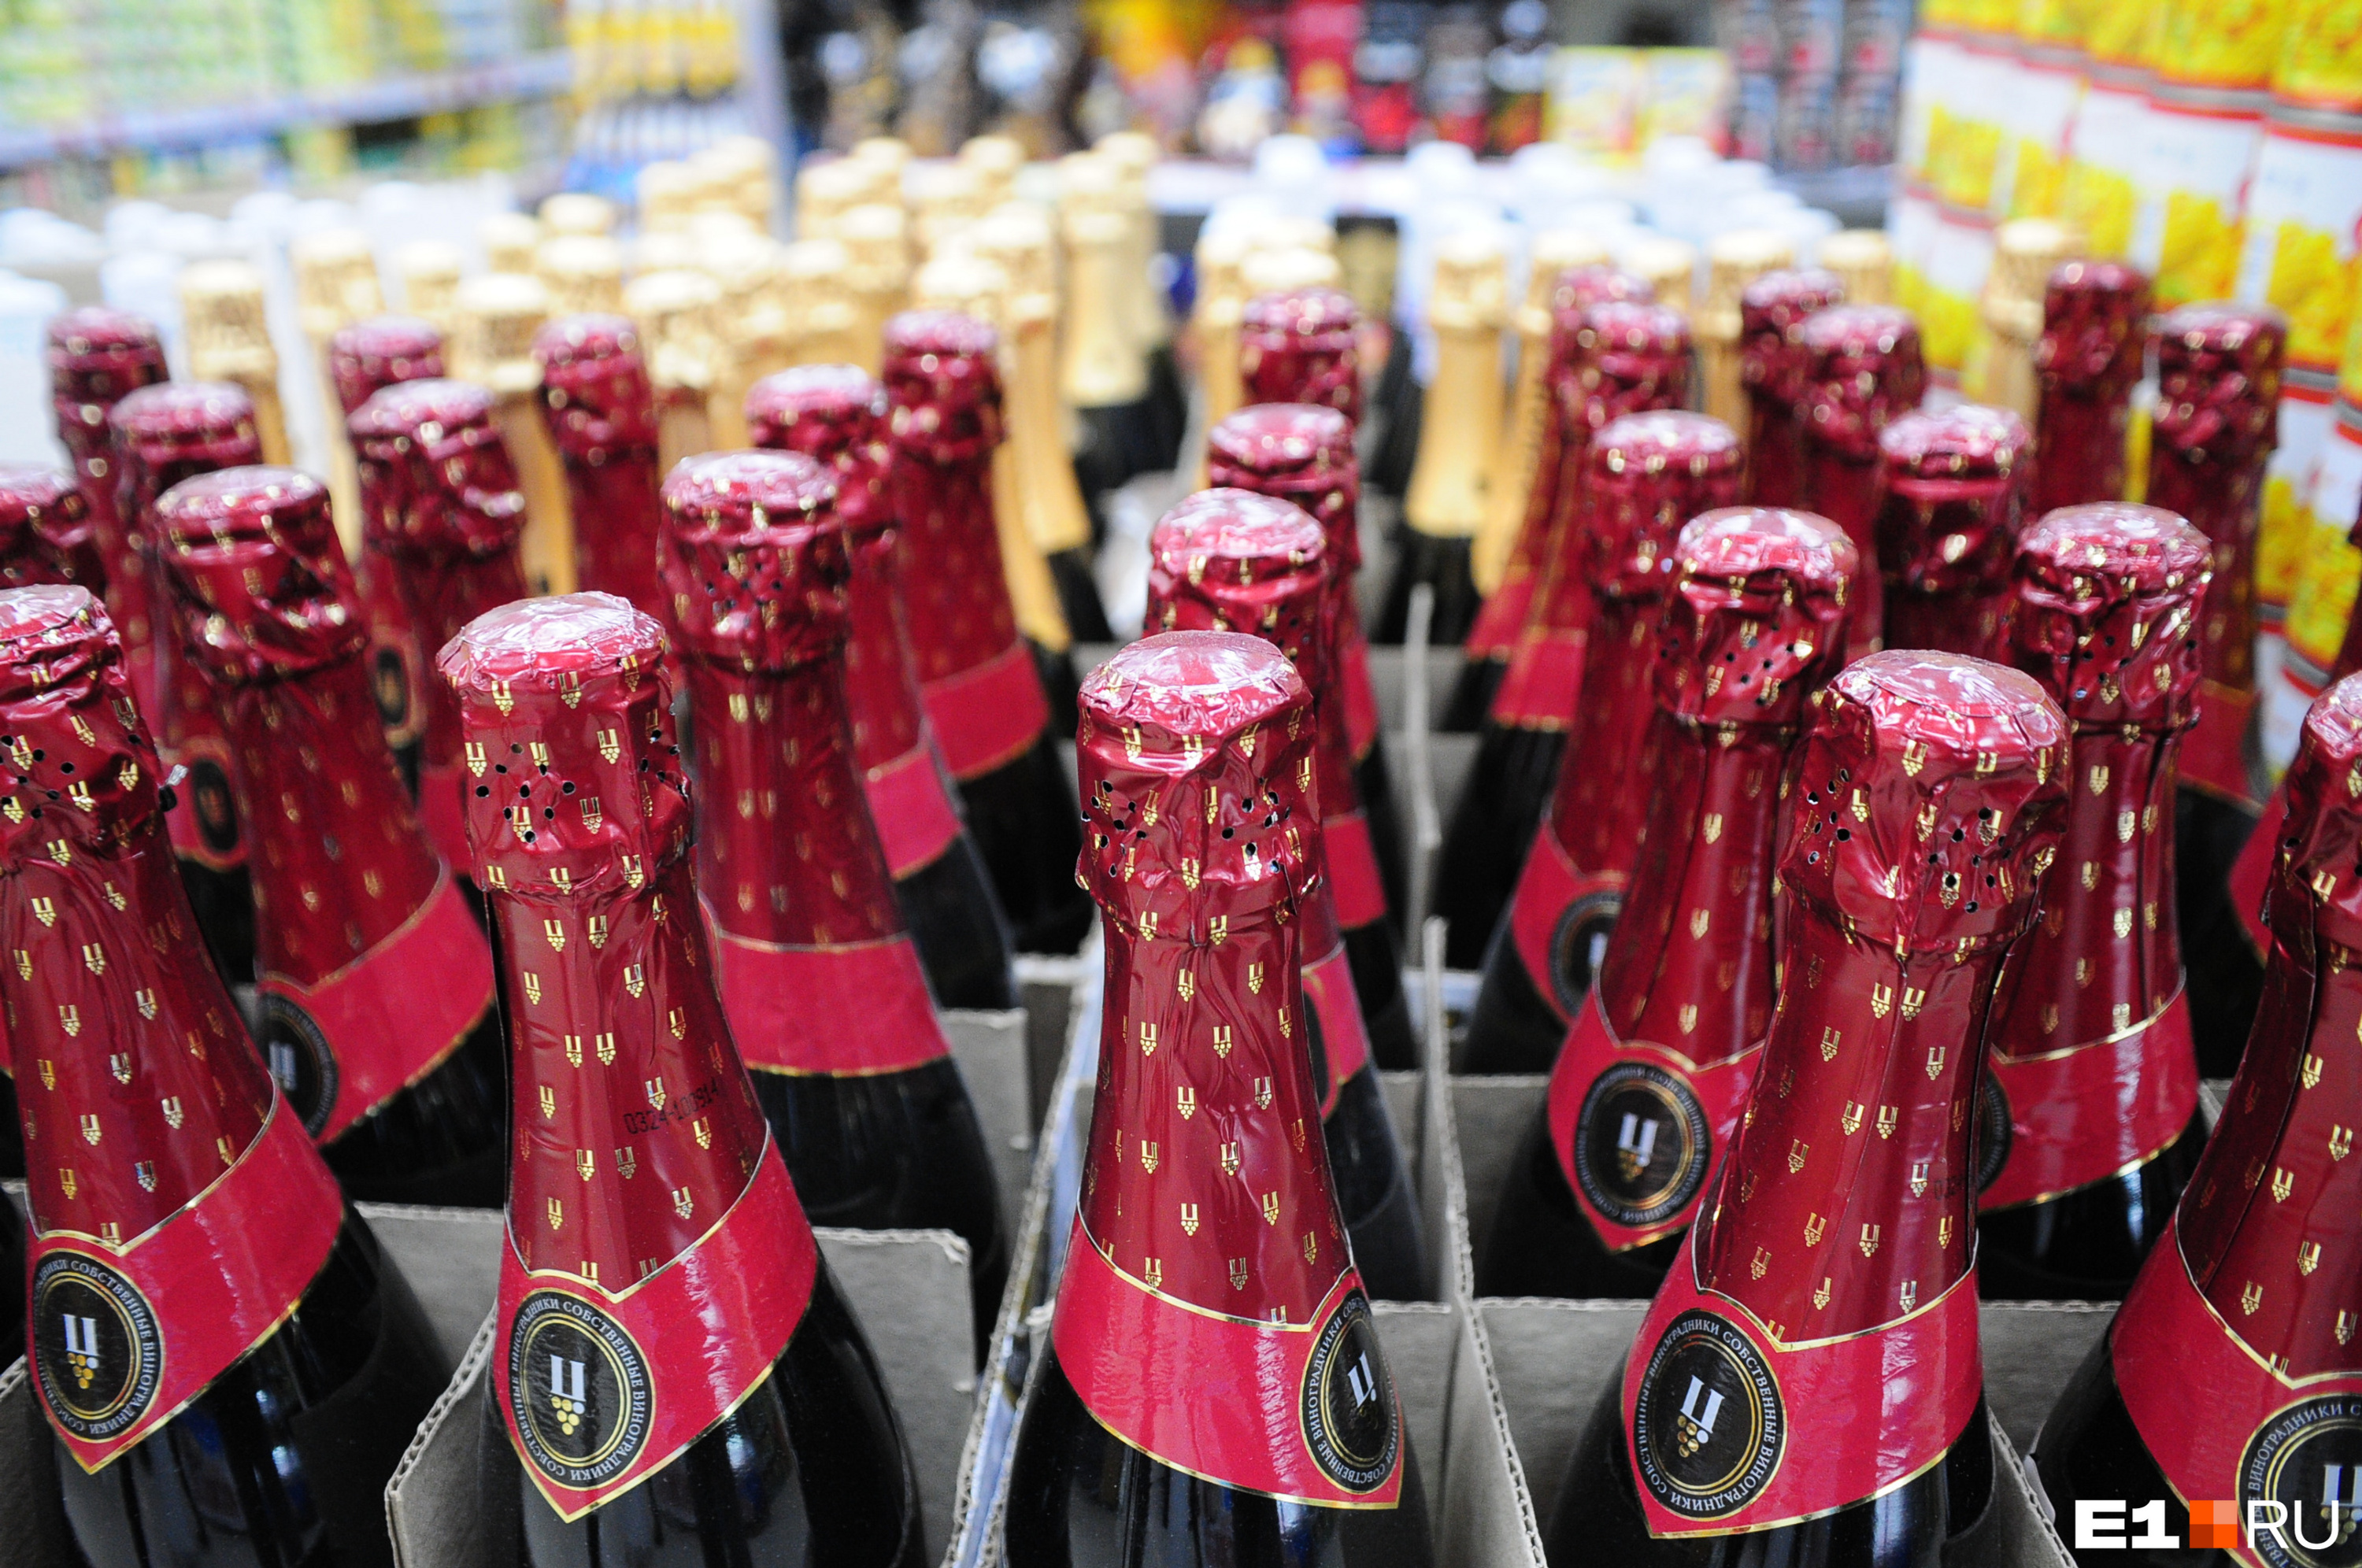 Этого еще не хватало! В Екатеринбурге перед Новым годом взлетели цены на шампанское и водку